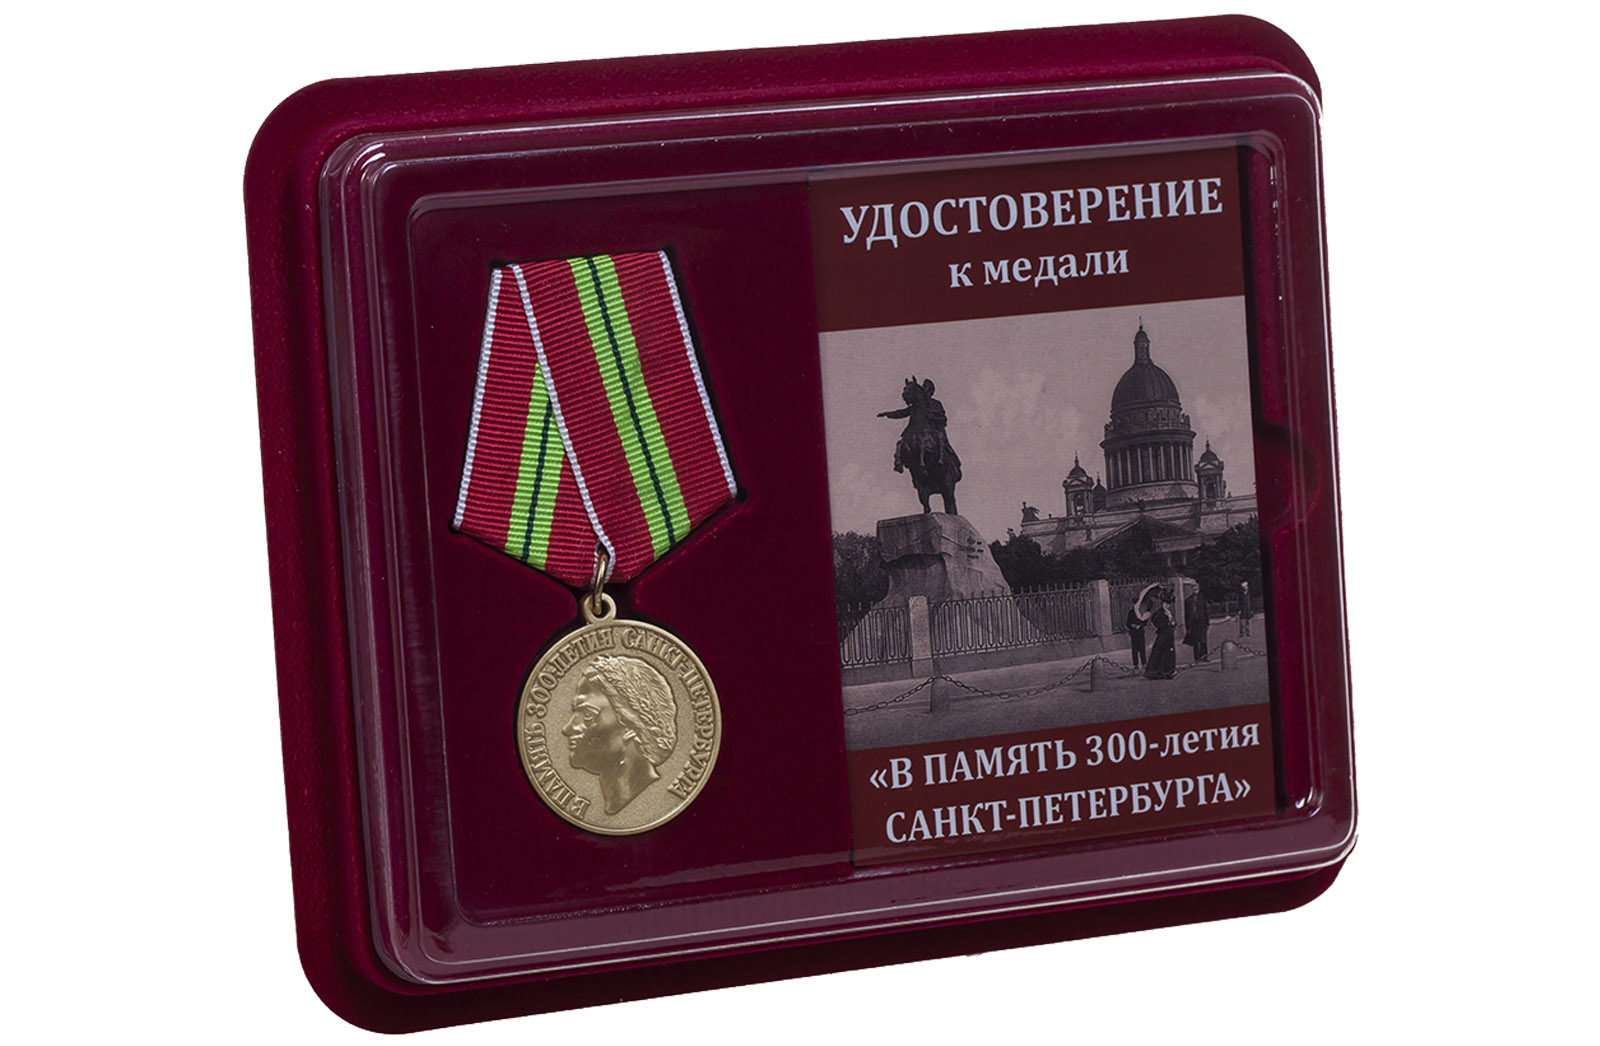 Купить памятную медаль 300-лет Санкт-Петербургу по лучшей цене